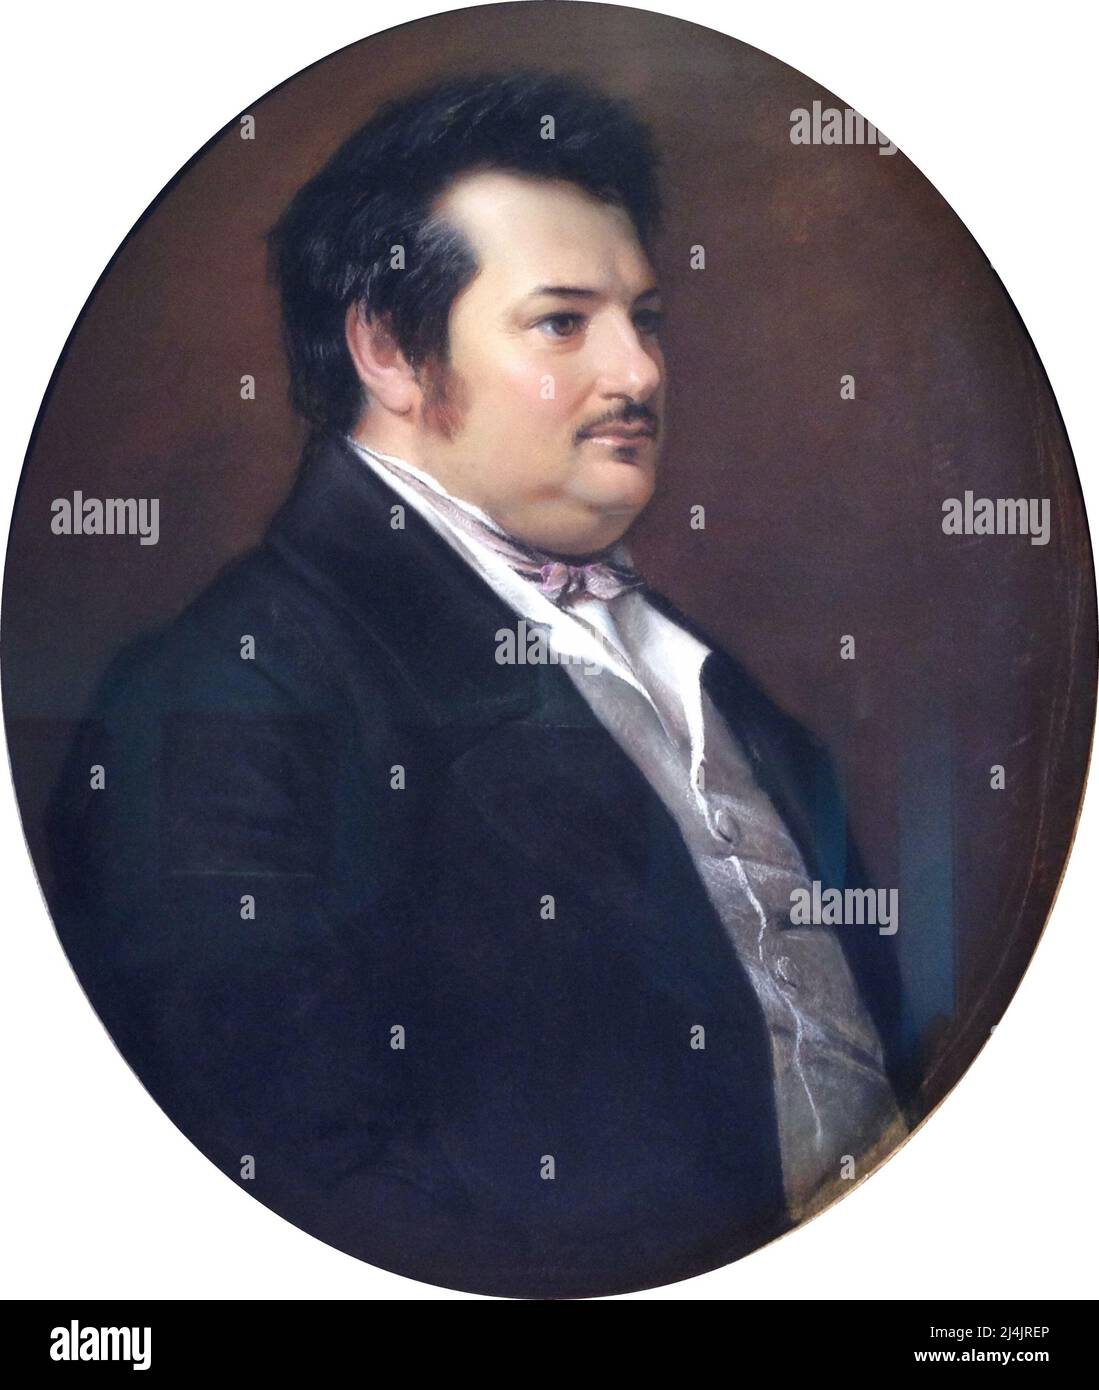 A portrait of the famous french author Honoré de Balzac Stock Photo